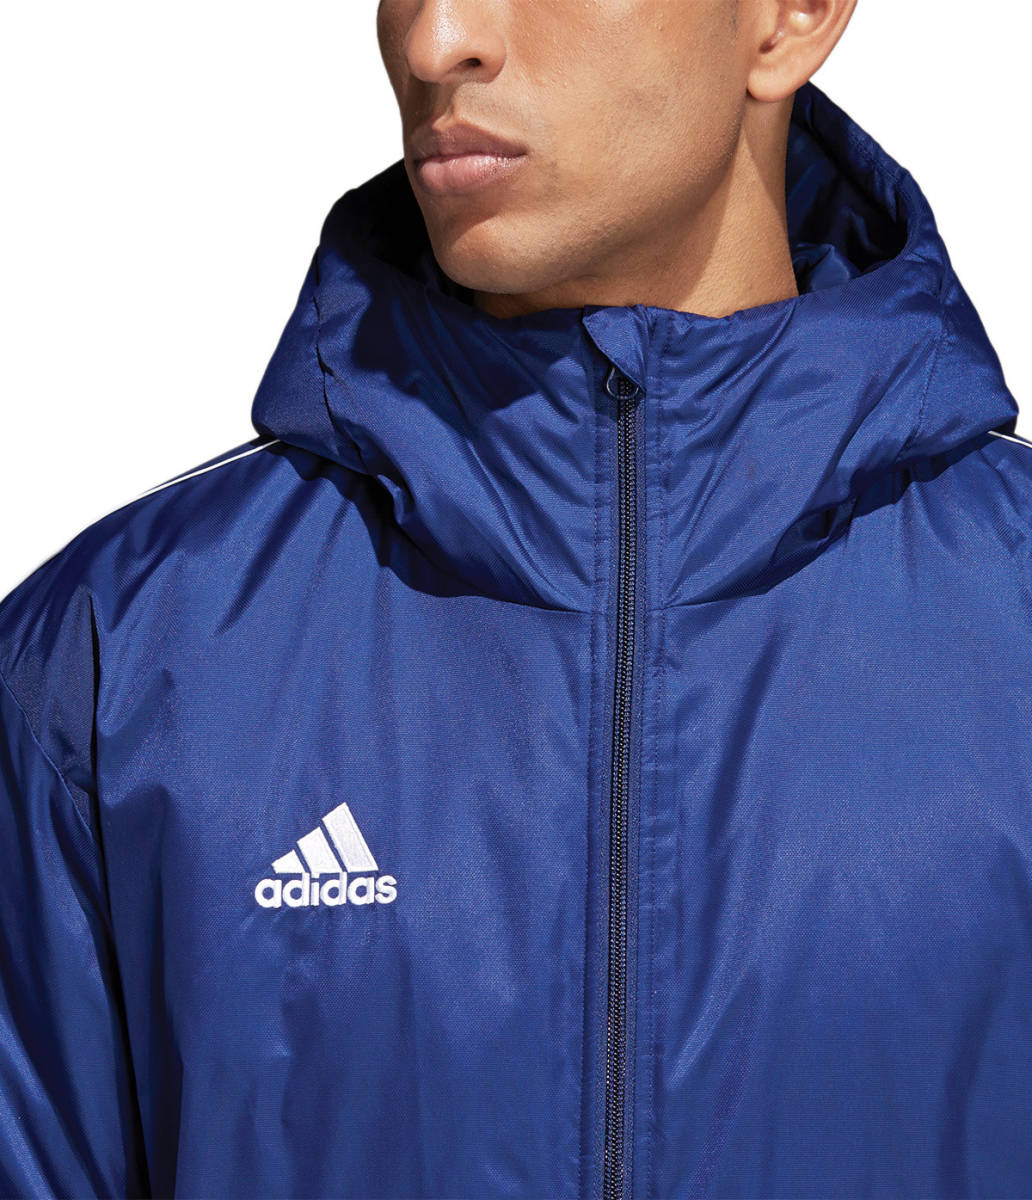 adidas мужской bench пальто темно-синий темно-голубой XO 2XL Adidas Stadium жакет с хлопком футбол футбол синий темно-синий CV3747